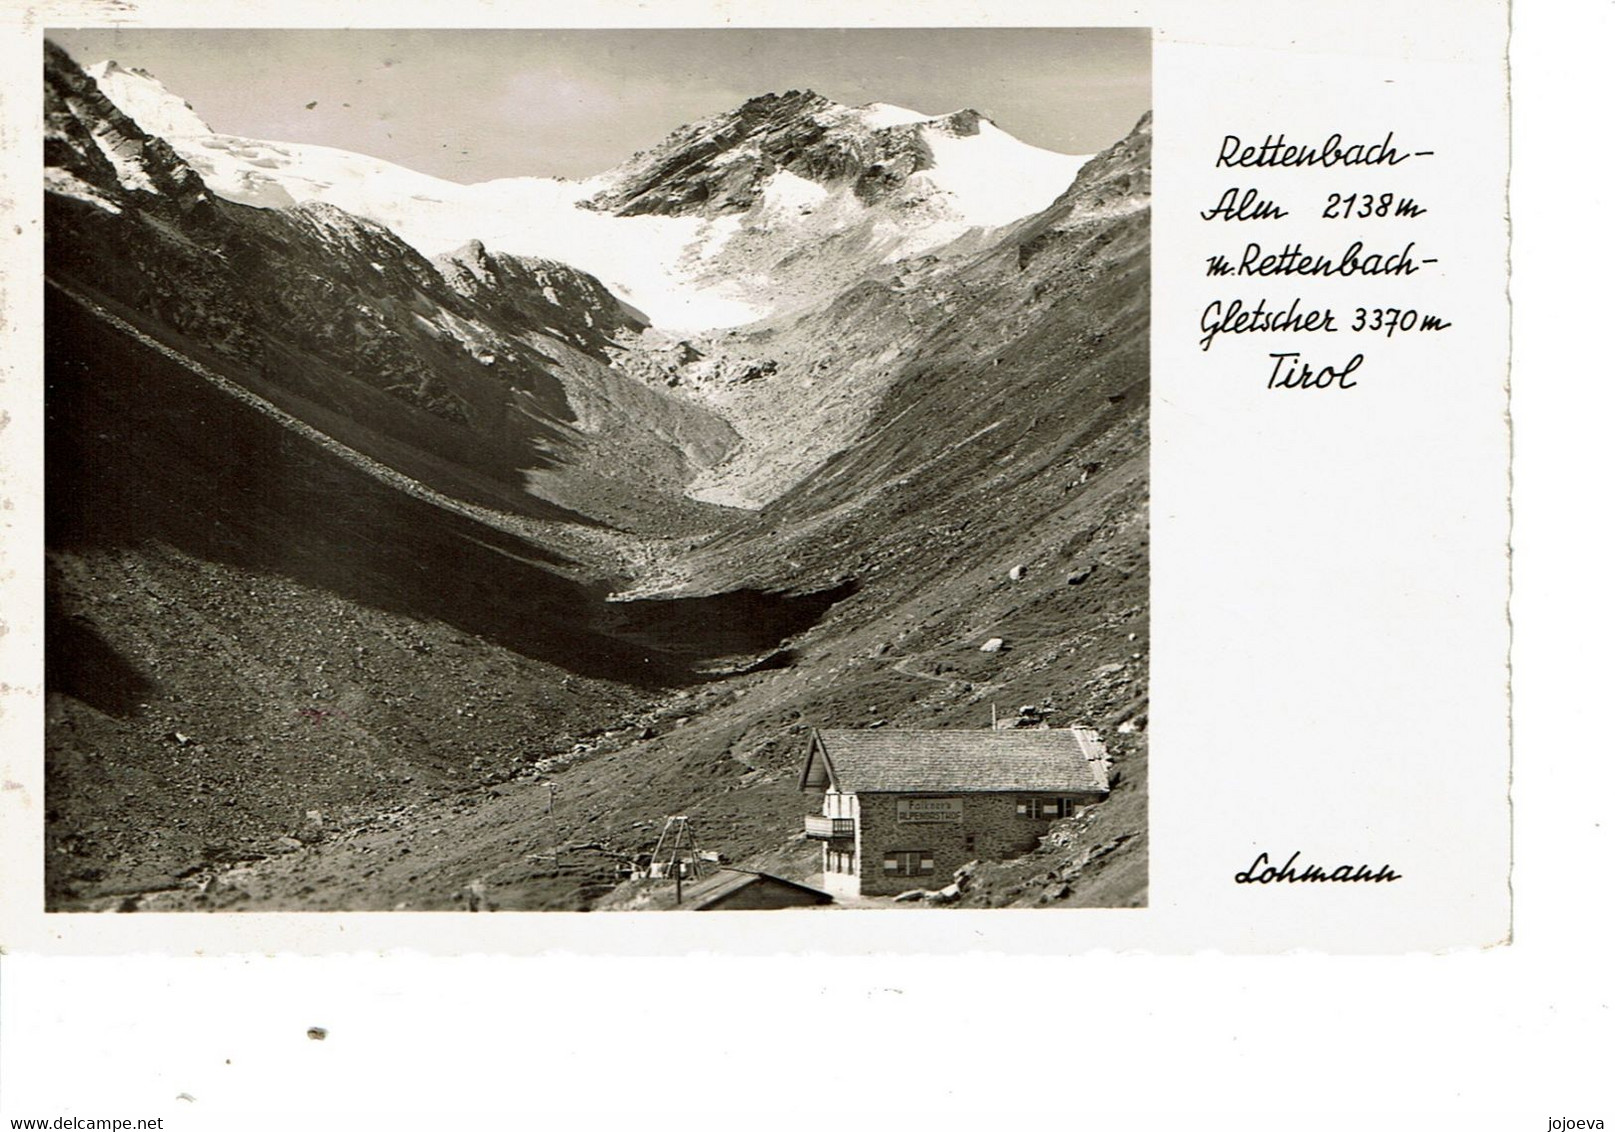 RETTENBACH  Alun 2138m Gletscher 3370m  TIROL - Rattenberg